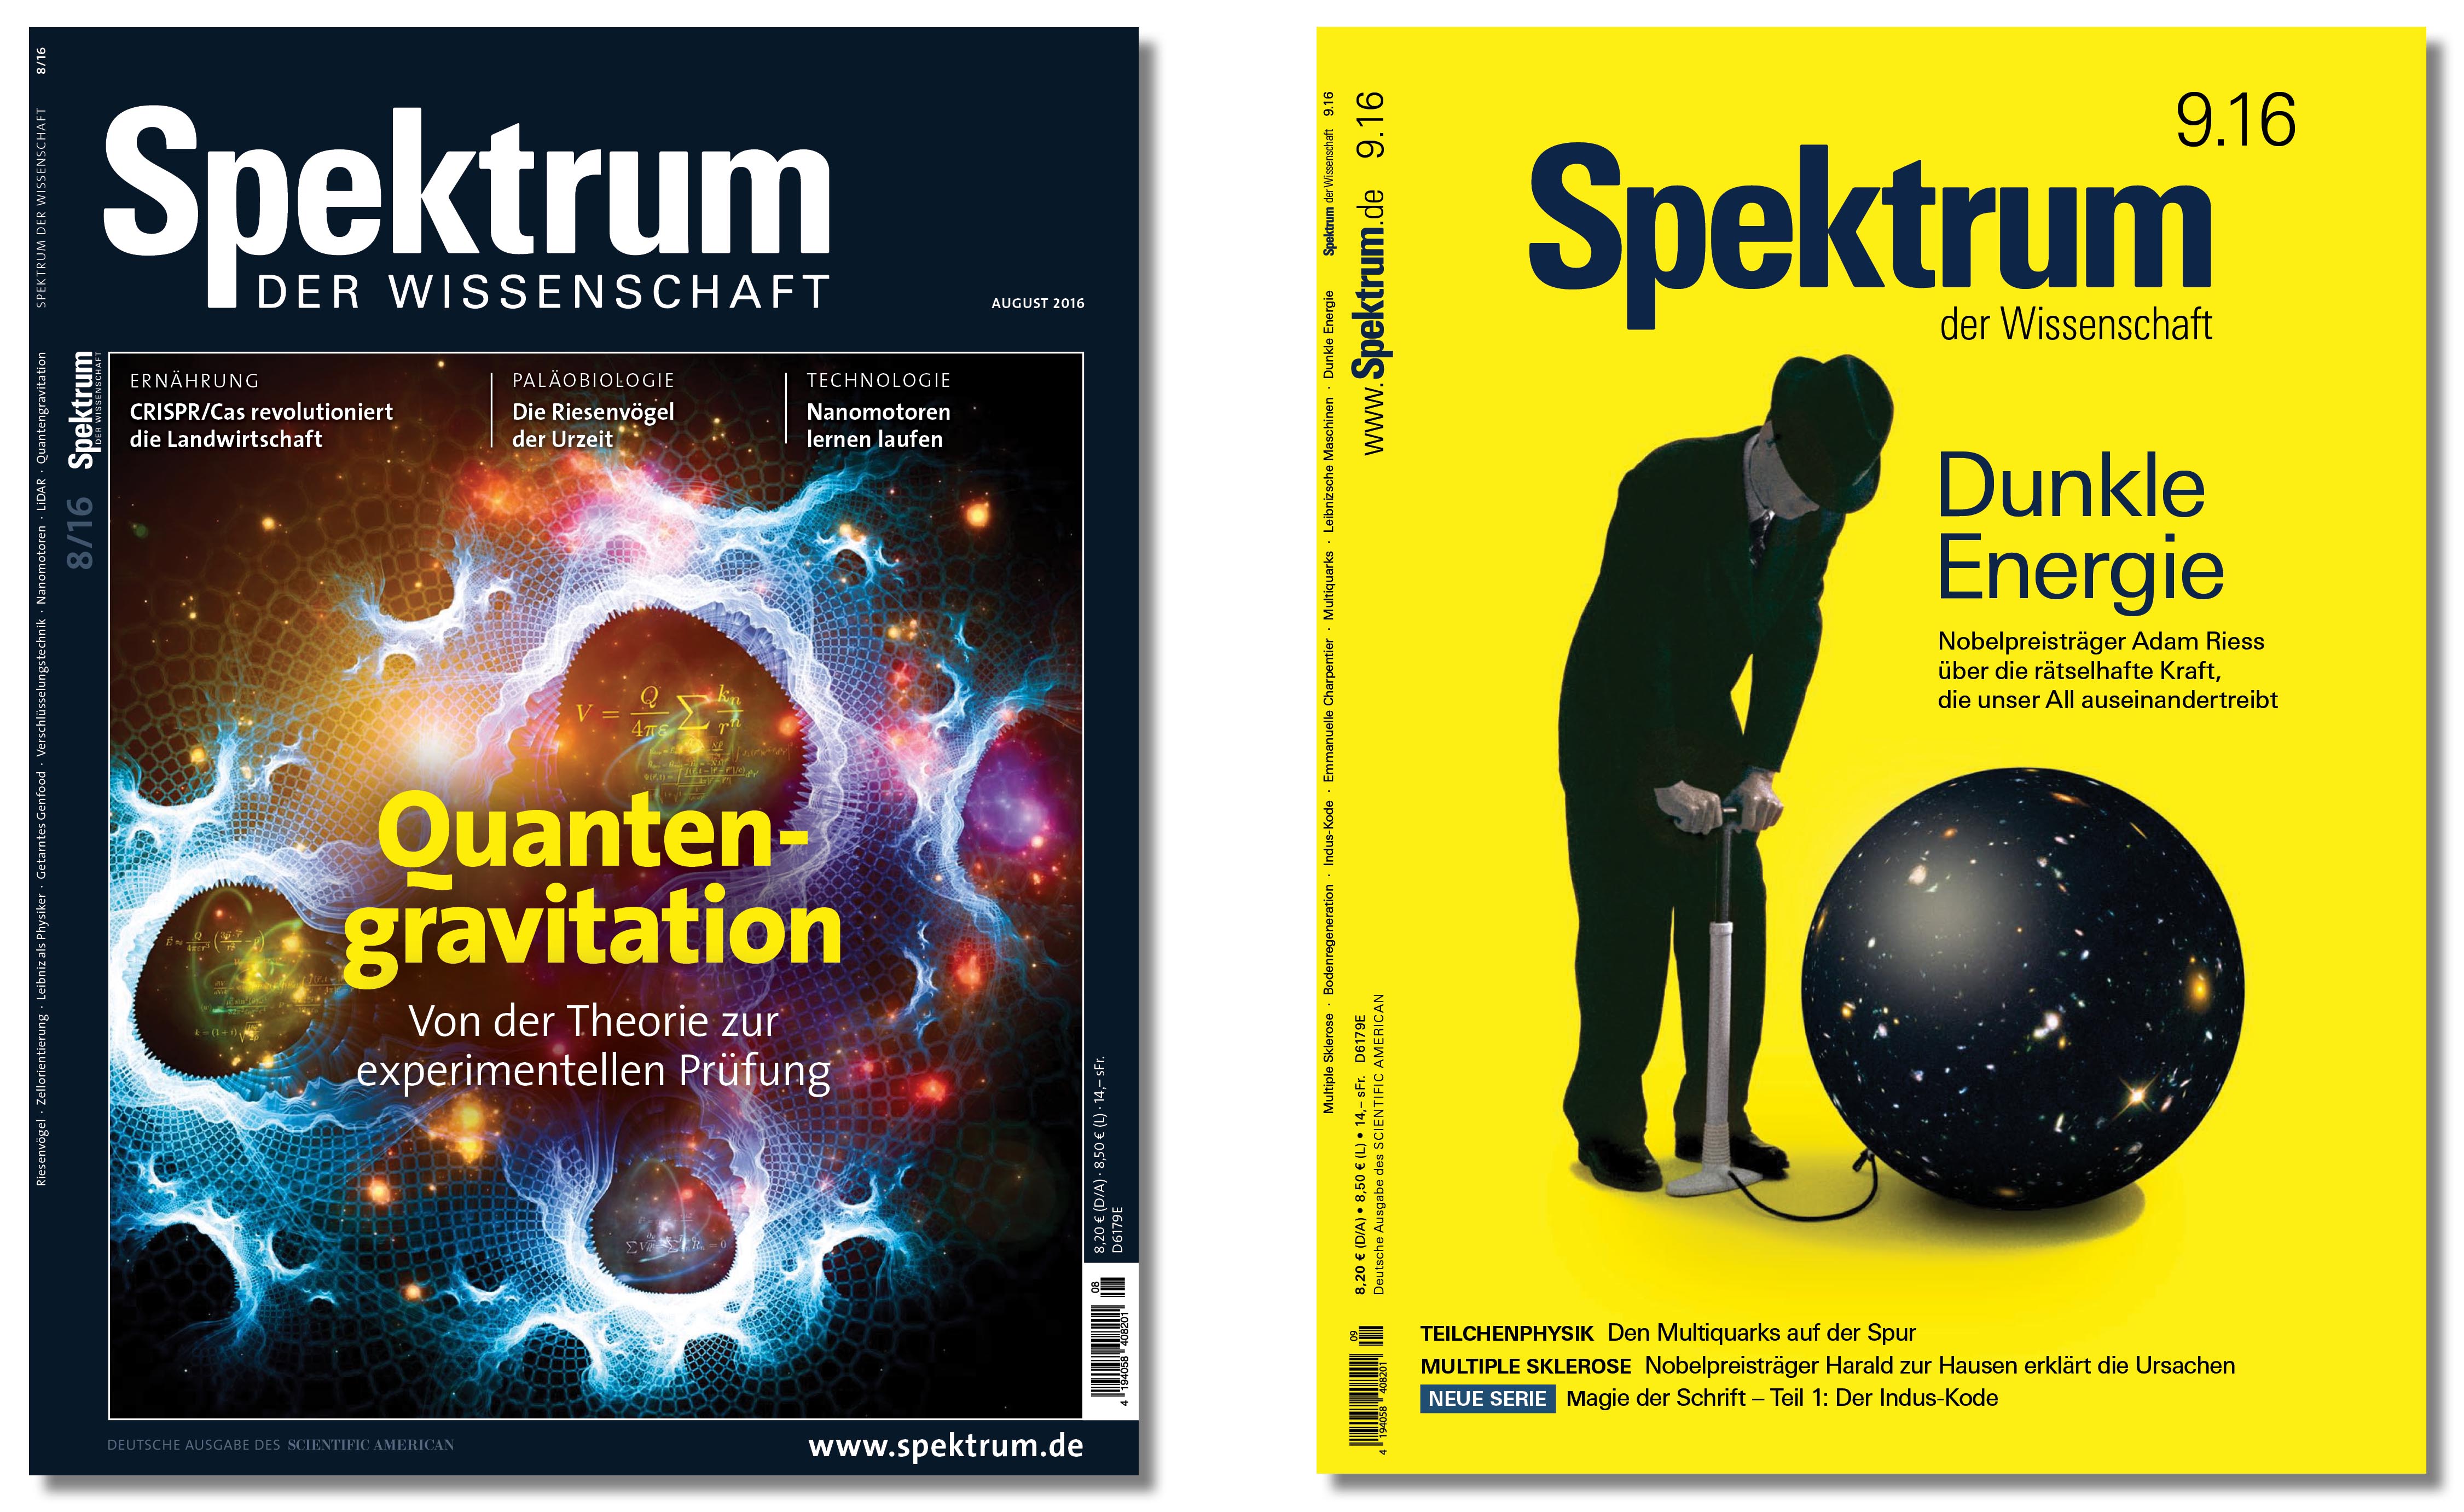 Vorher / Nachher: Spektrum der Wissenschaft Ausgabe August und Relaunch-Startausgabe September 2016 – Plakativer, moderner, prägnanter.